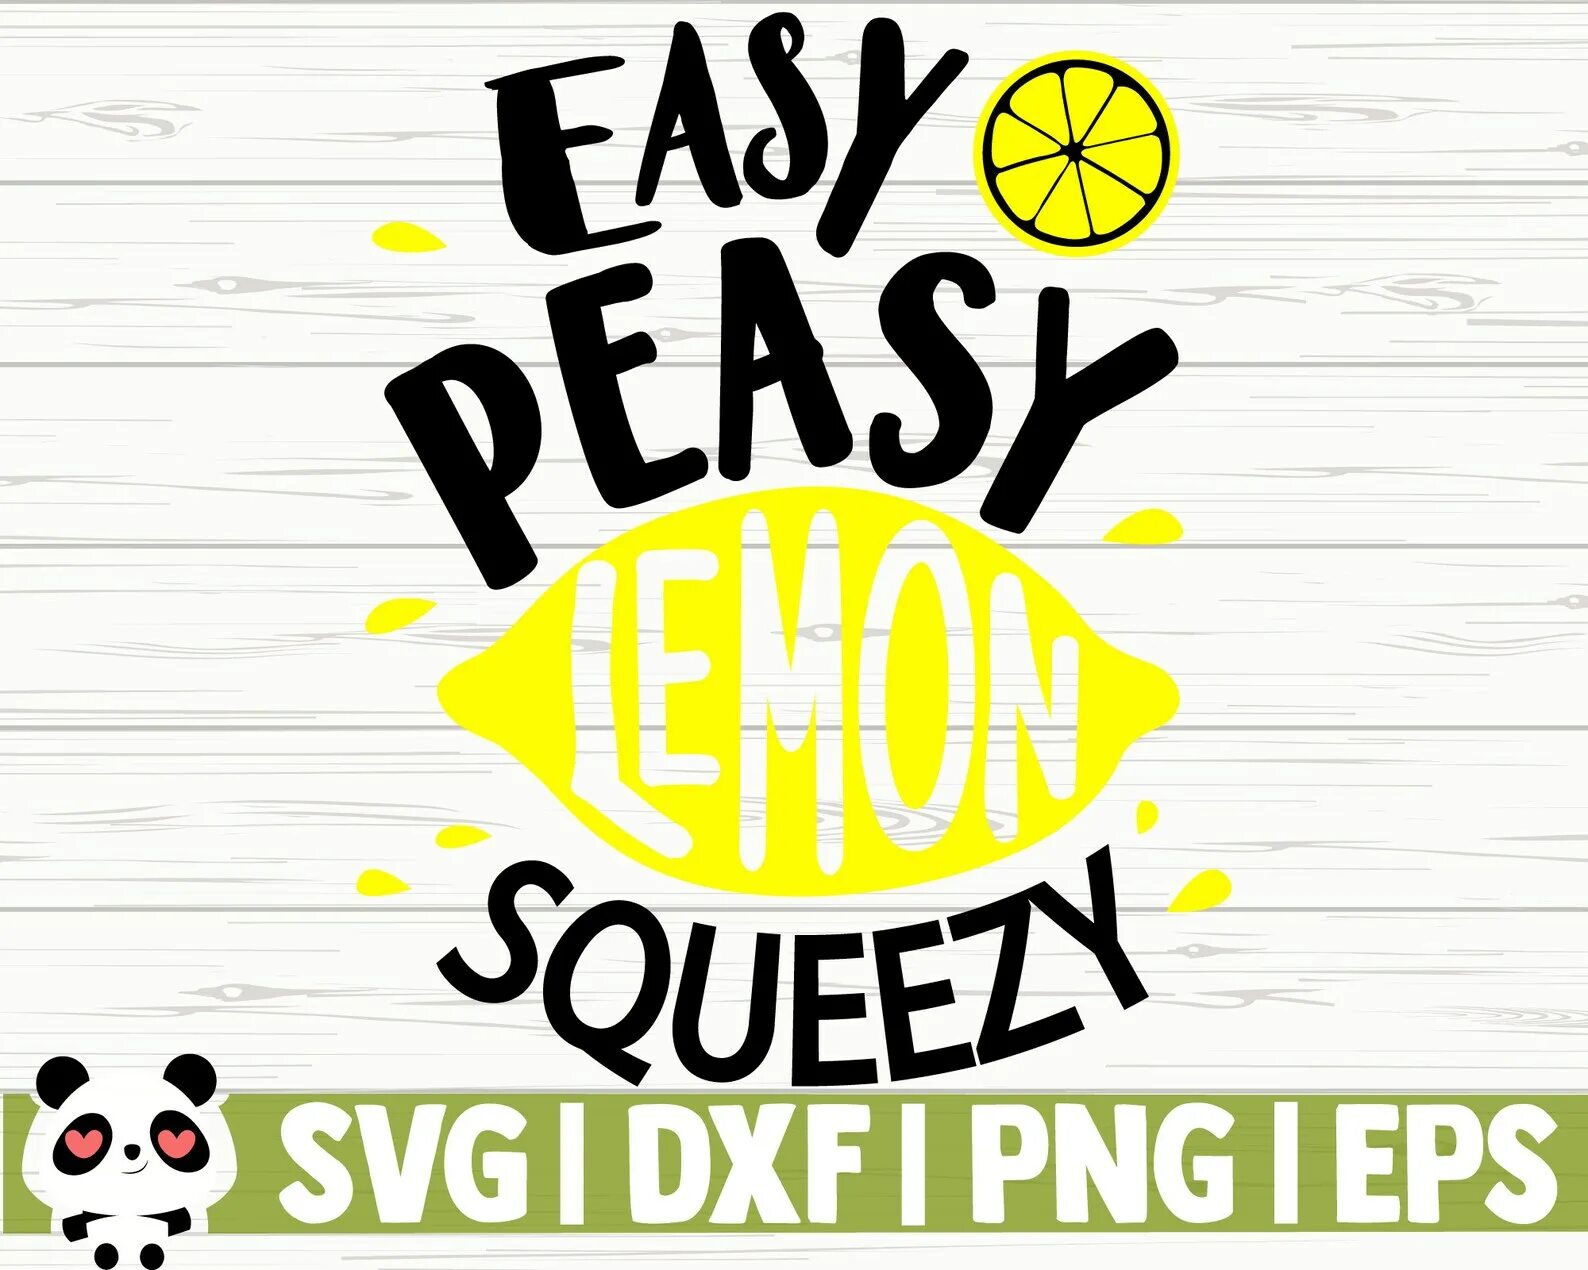 Easy Peasy Lemon Squeezy. Easy Peasy Lemon Squeezy картинка. Торговая марка easy Peasy. Lemon Squeezy группа. Easy squeezy